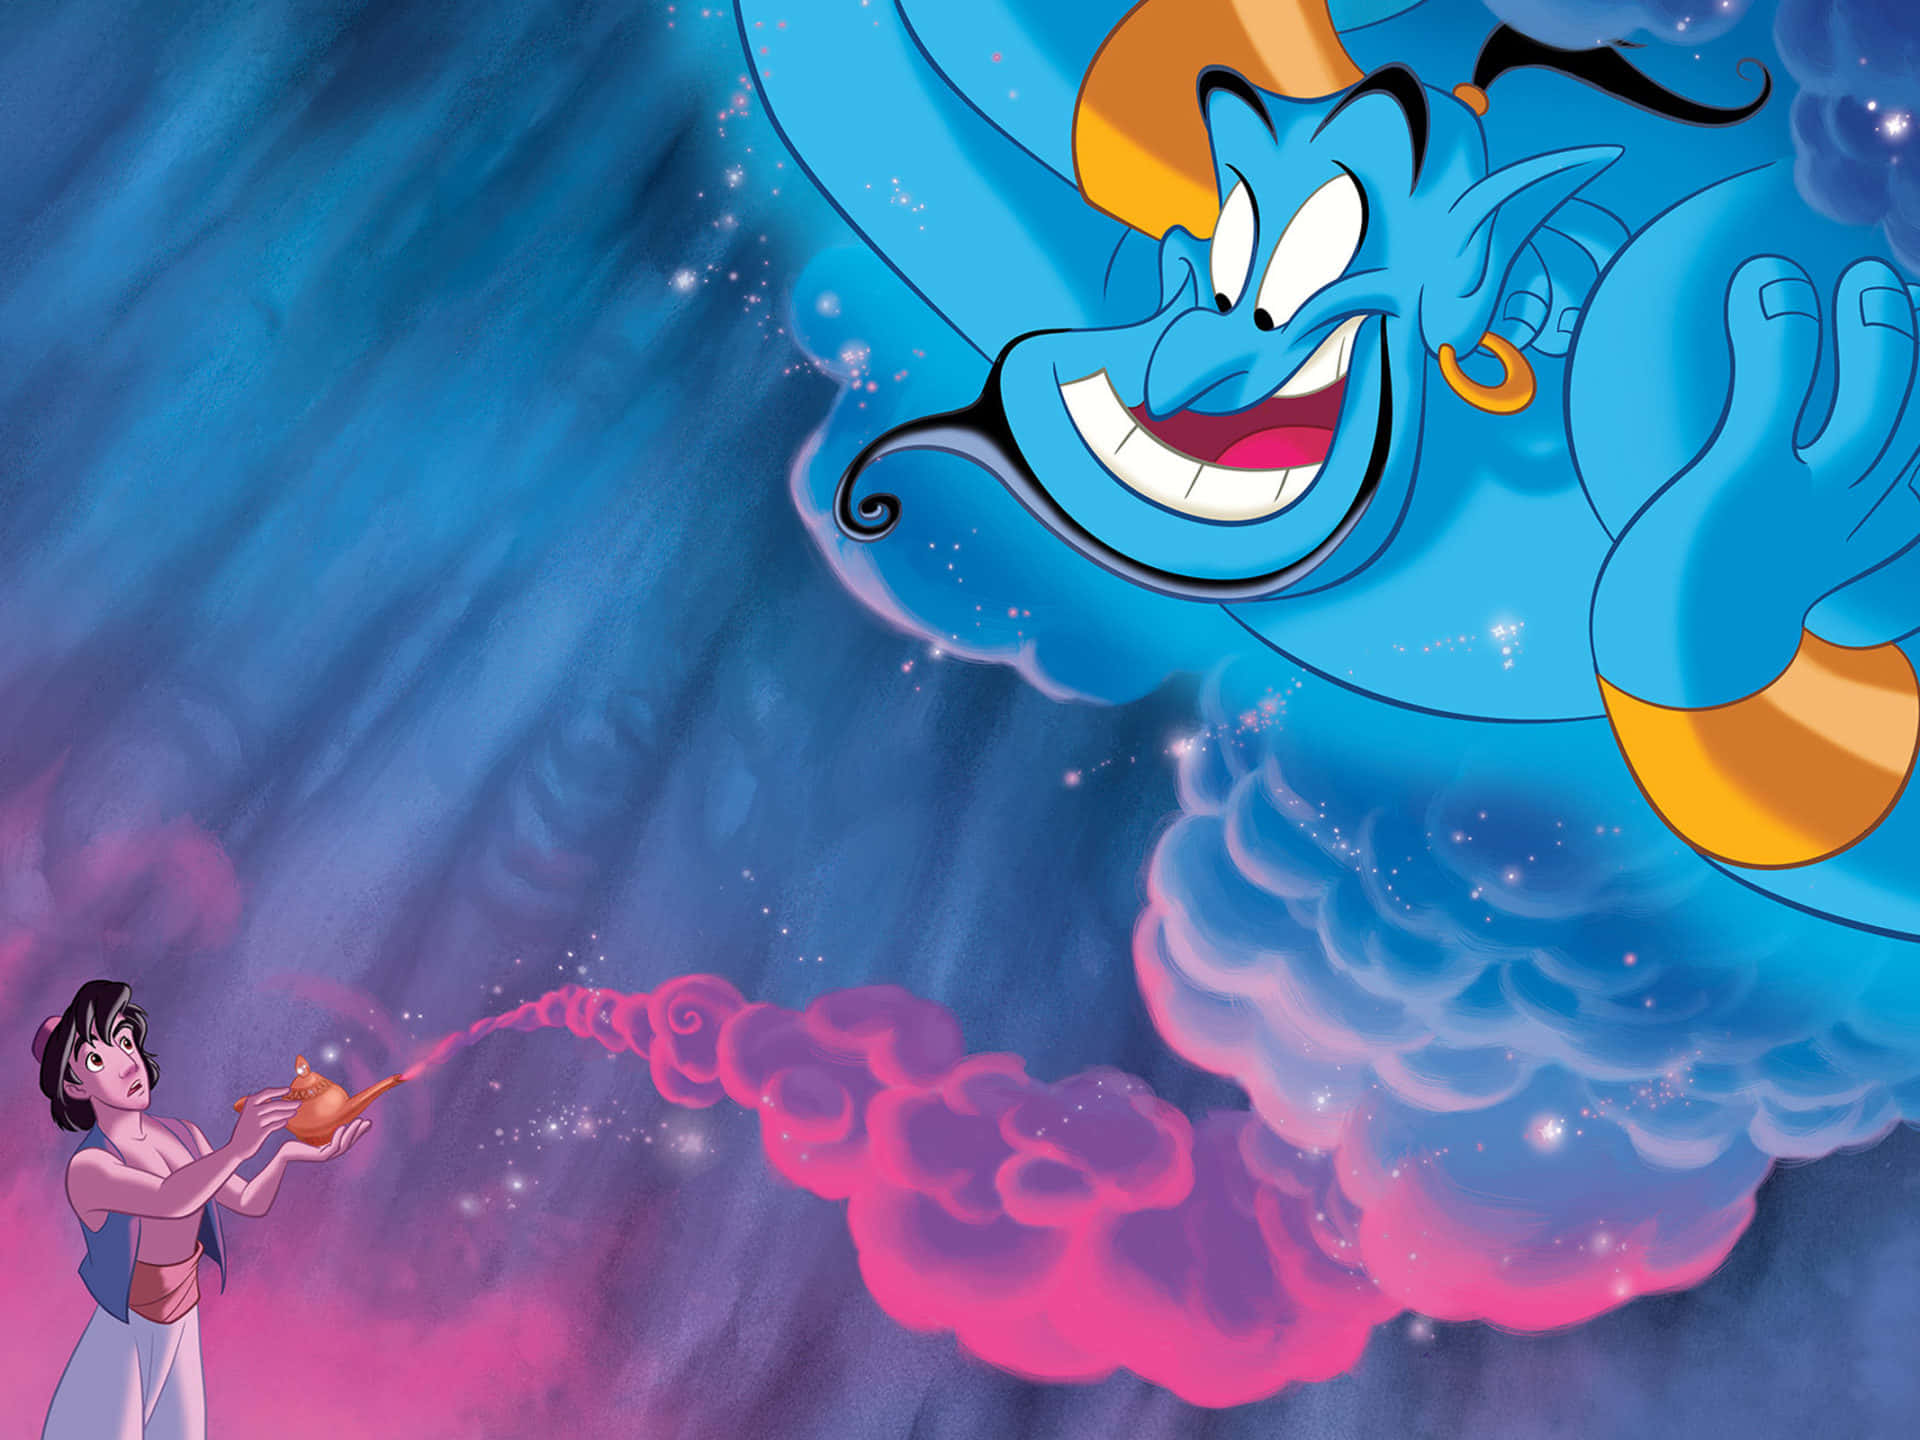 Embarqueem Uma Jornada Mágica Com Aladdin!